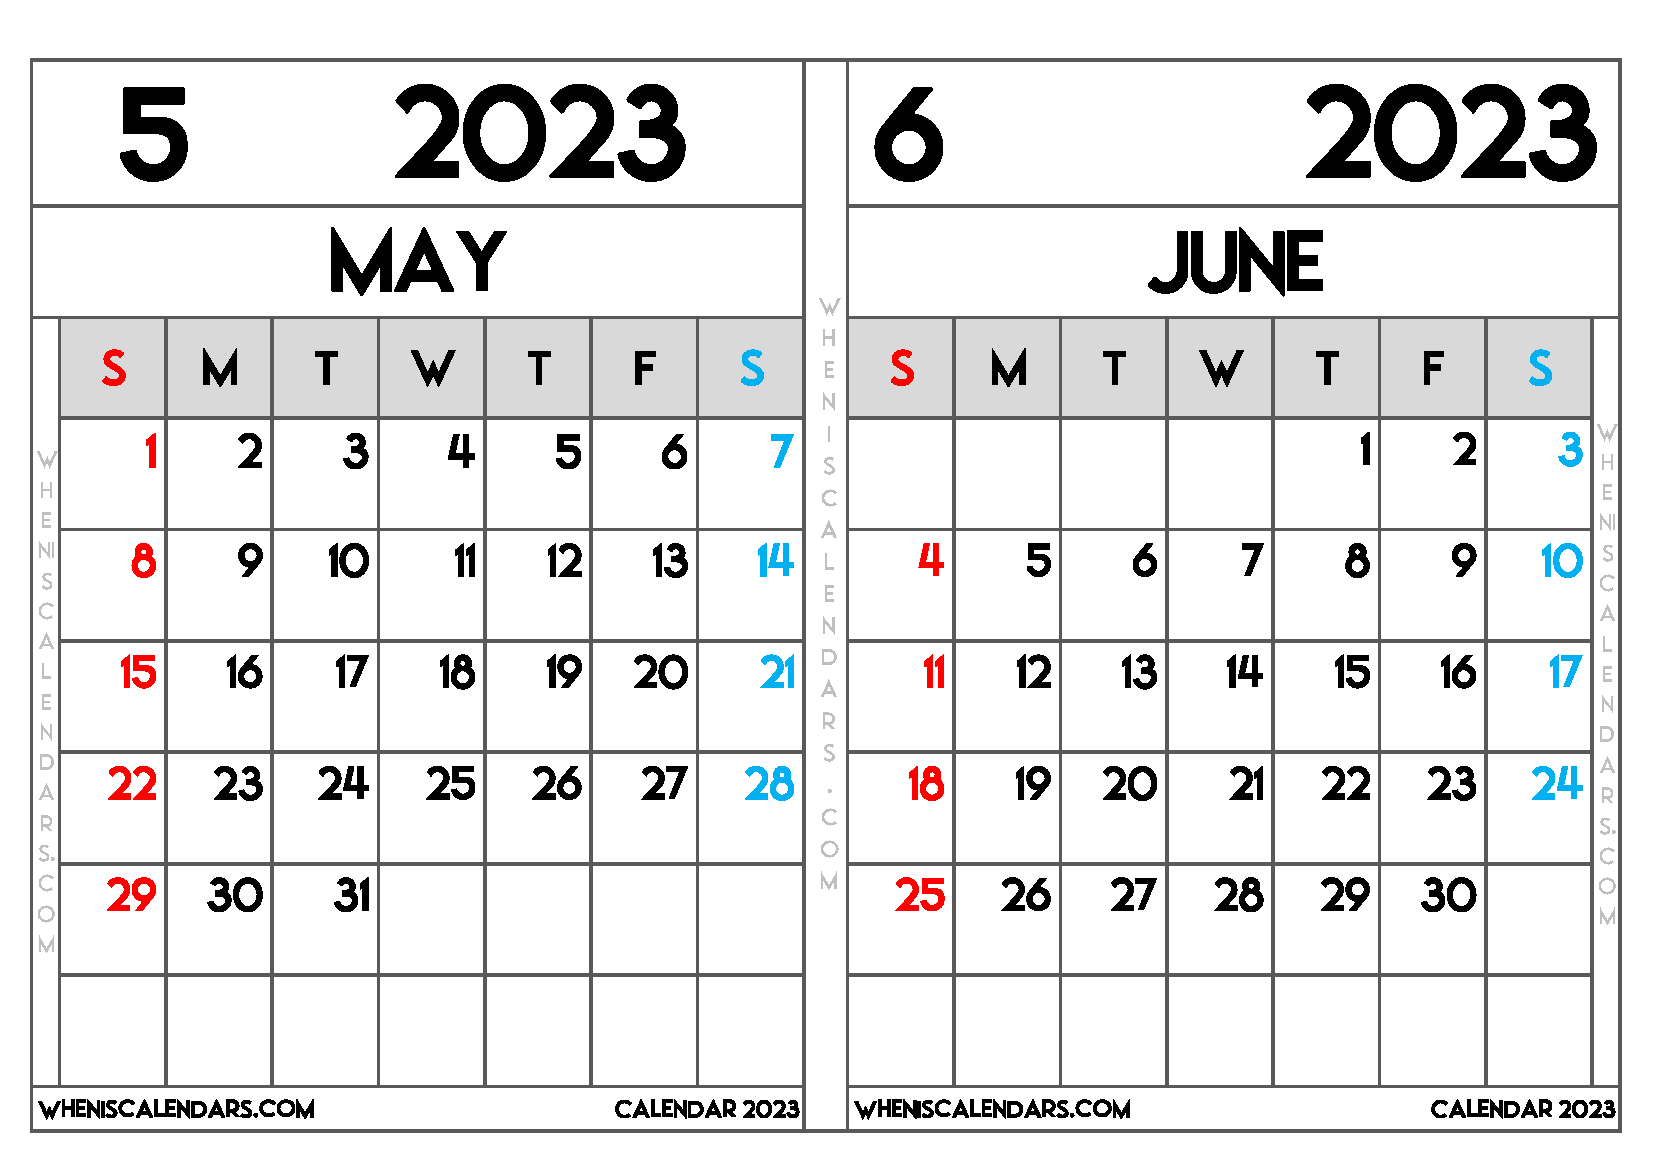 May Calender 2023